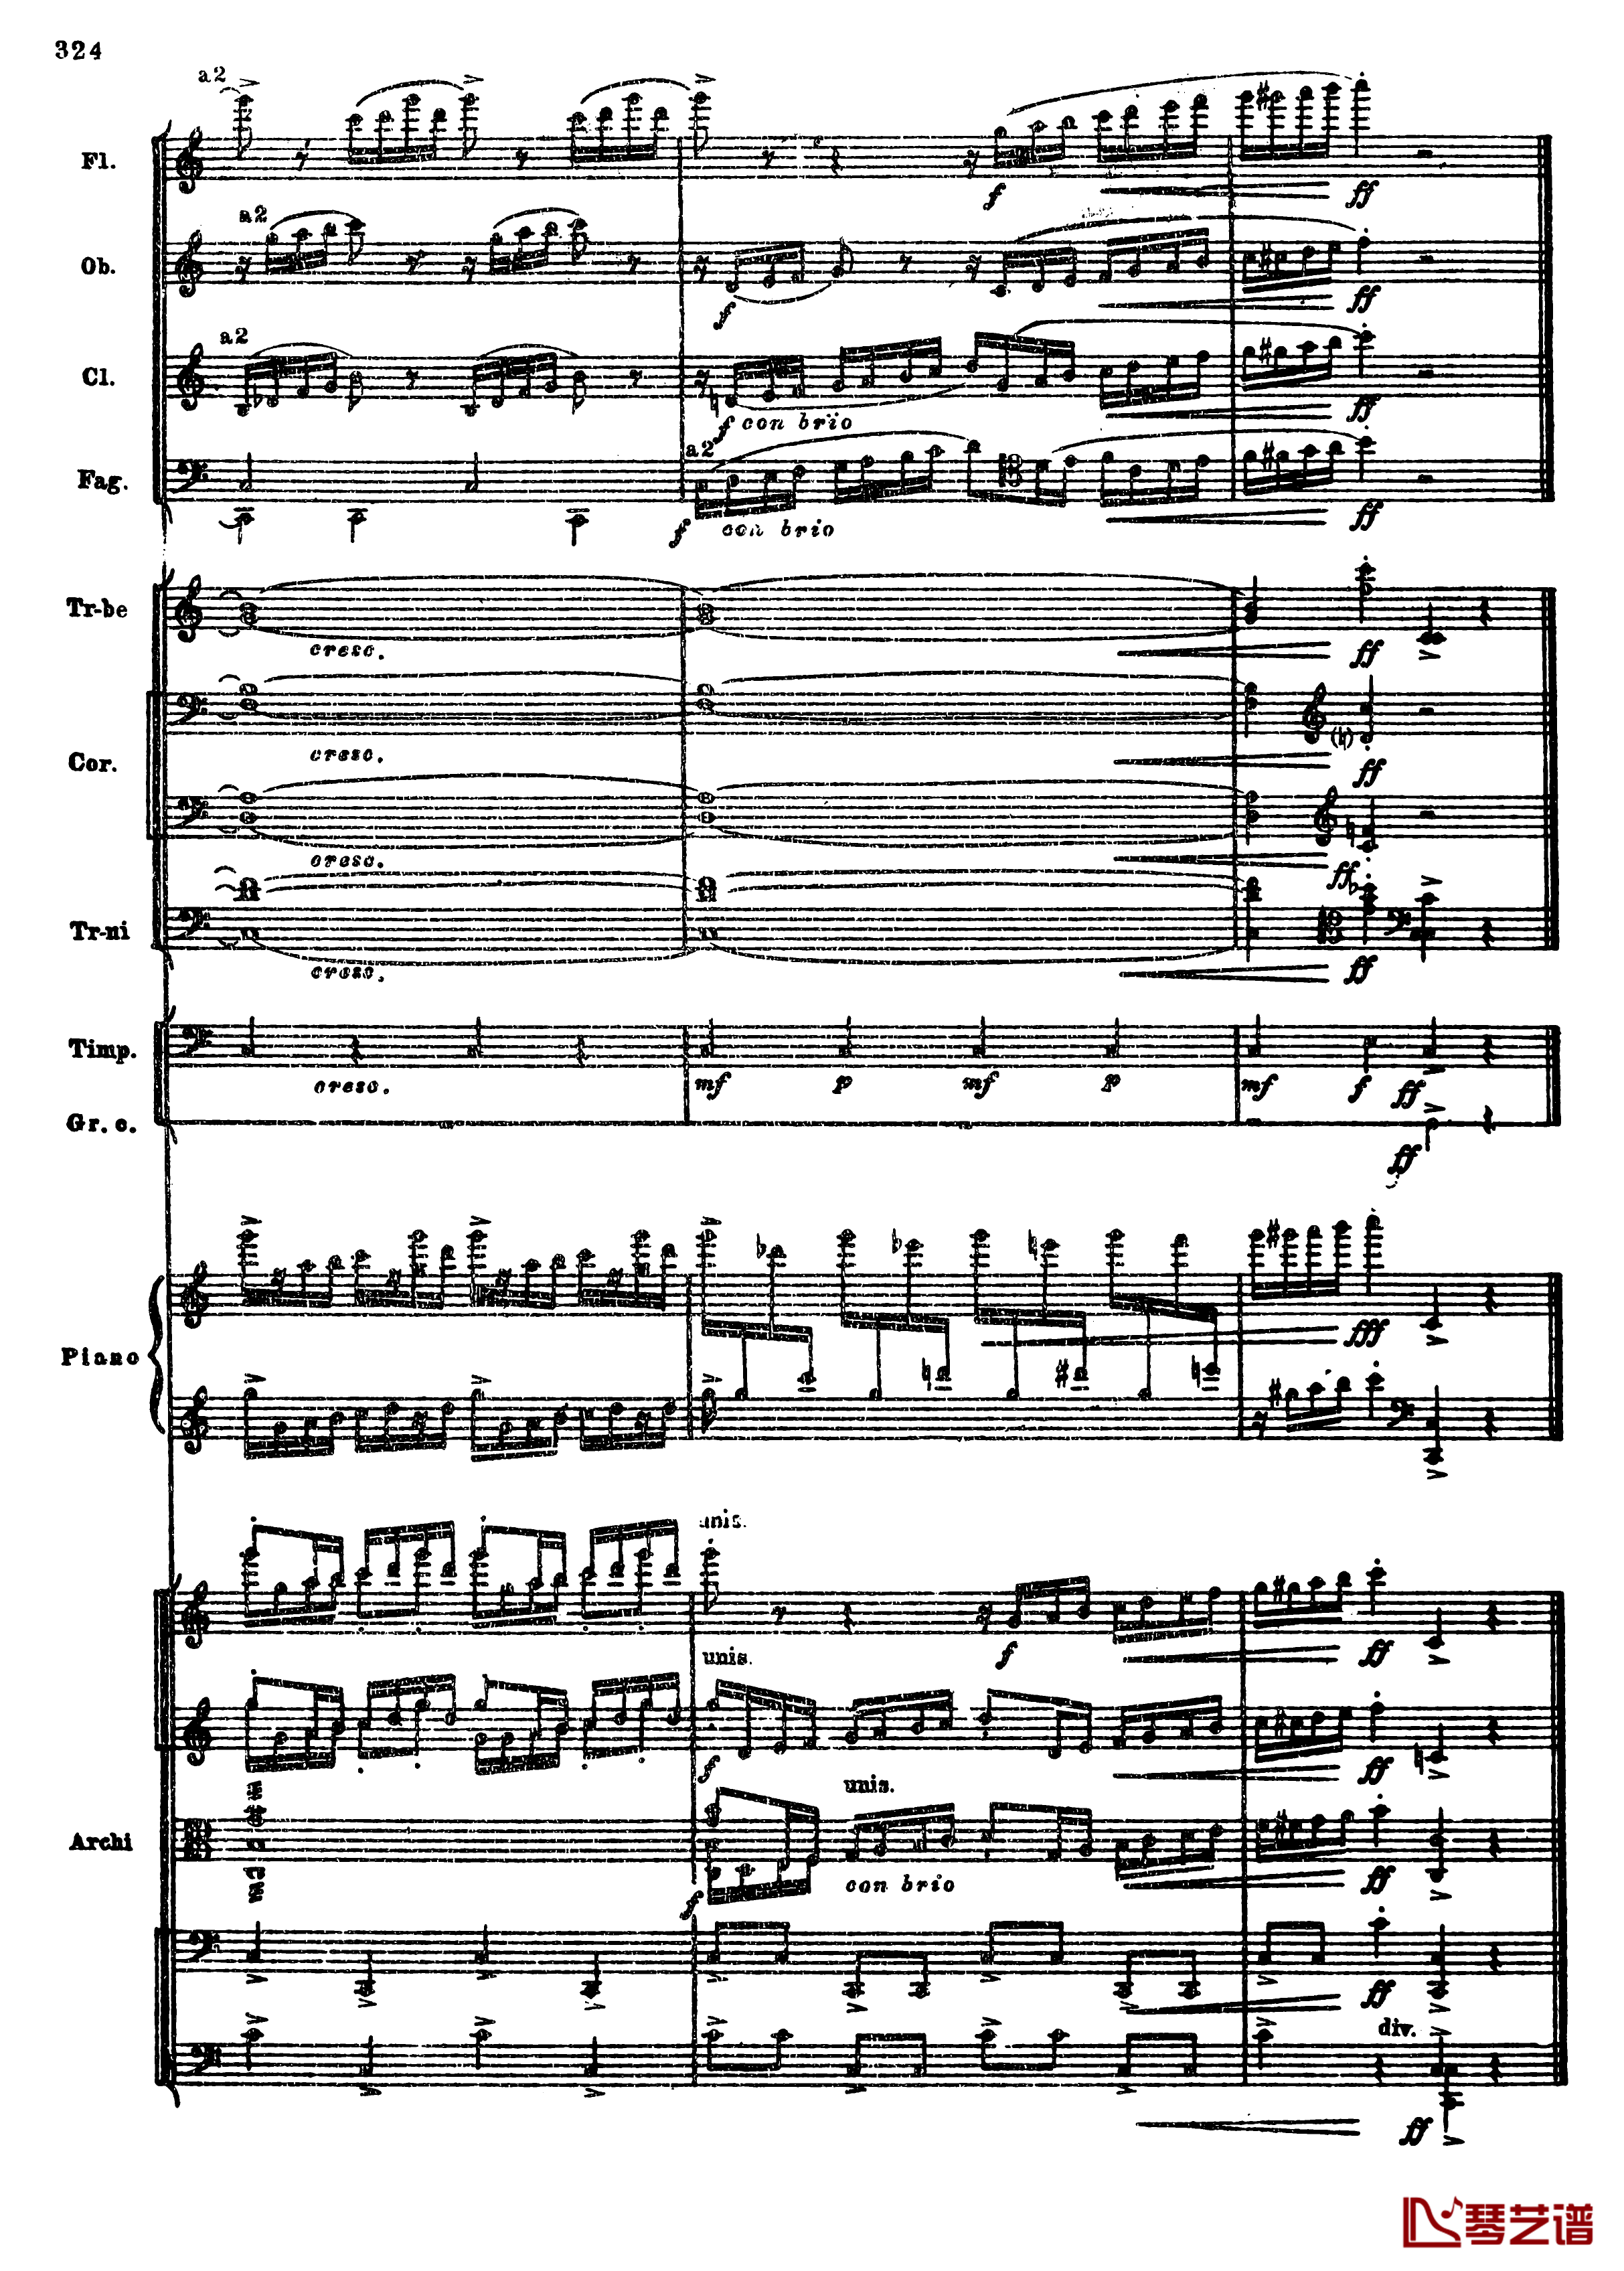 普罗科菲耶夫第三钢琴协奏曲钢琴谱-总谱-普罗科非耶夫56